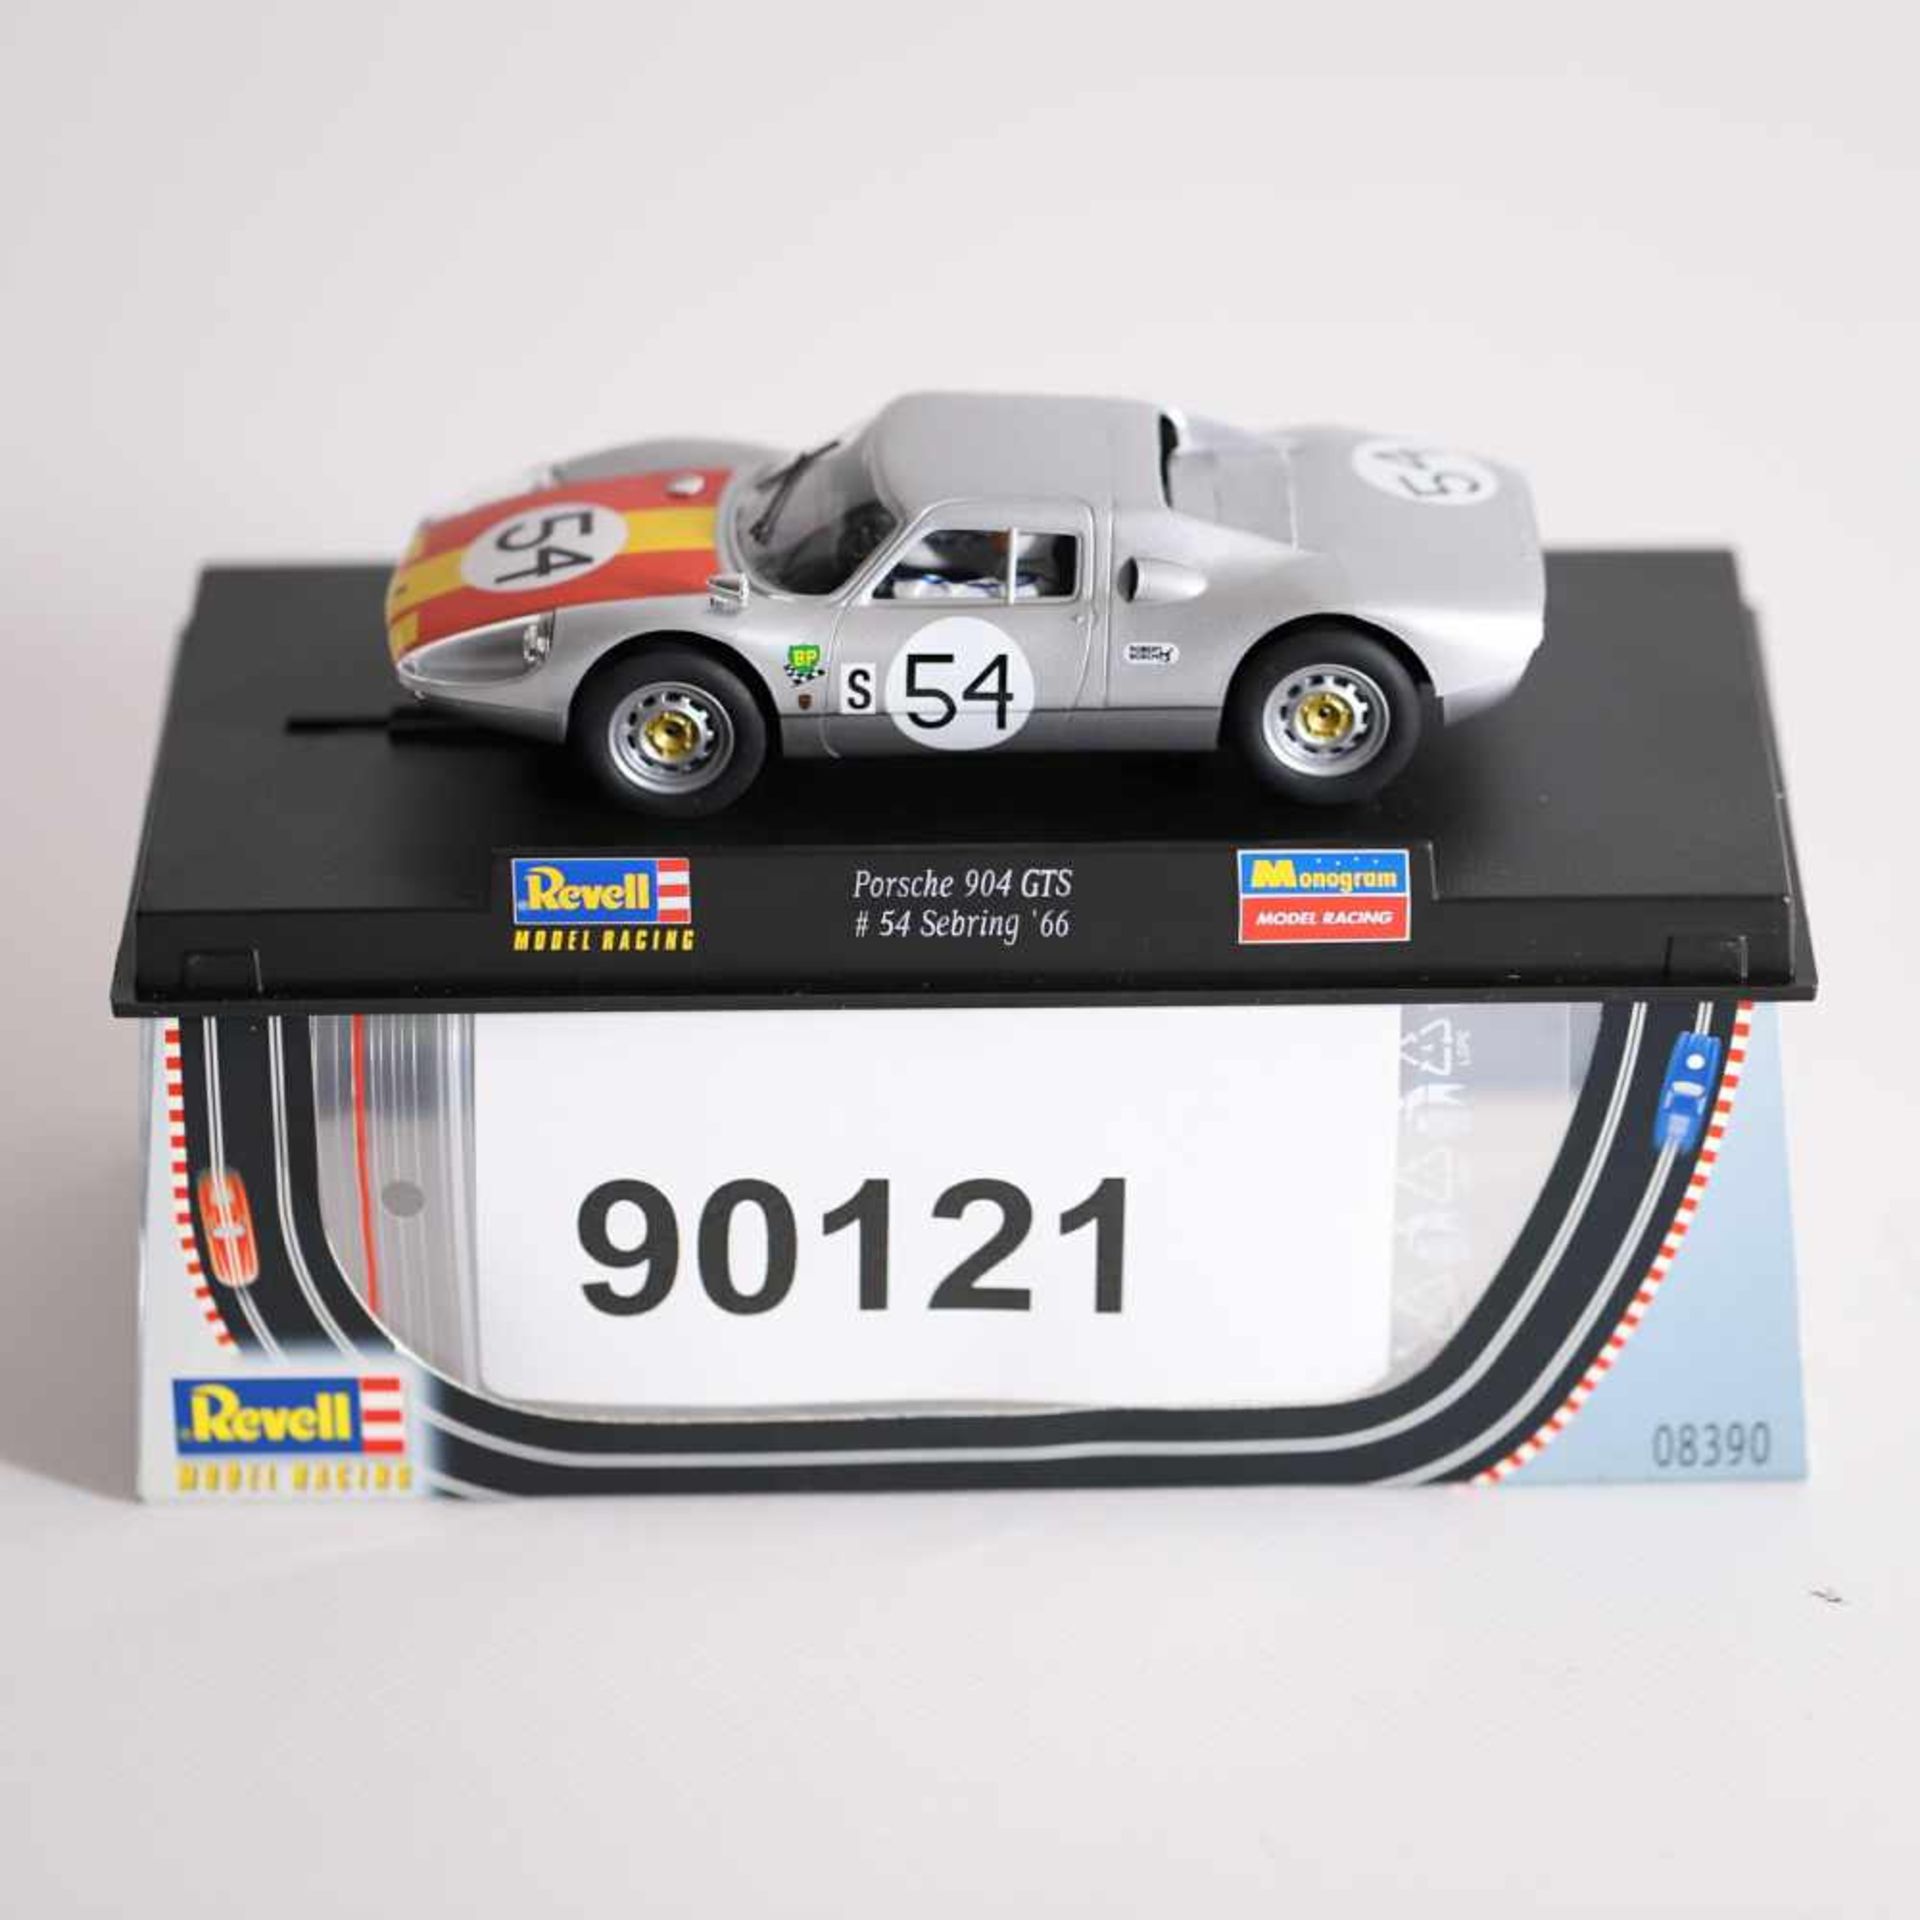 Revell 08390 Porsche 904 GTS, "54 Sebring '66, 1:32, OVP- - -20.00 % buyer's premium on the hammer